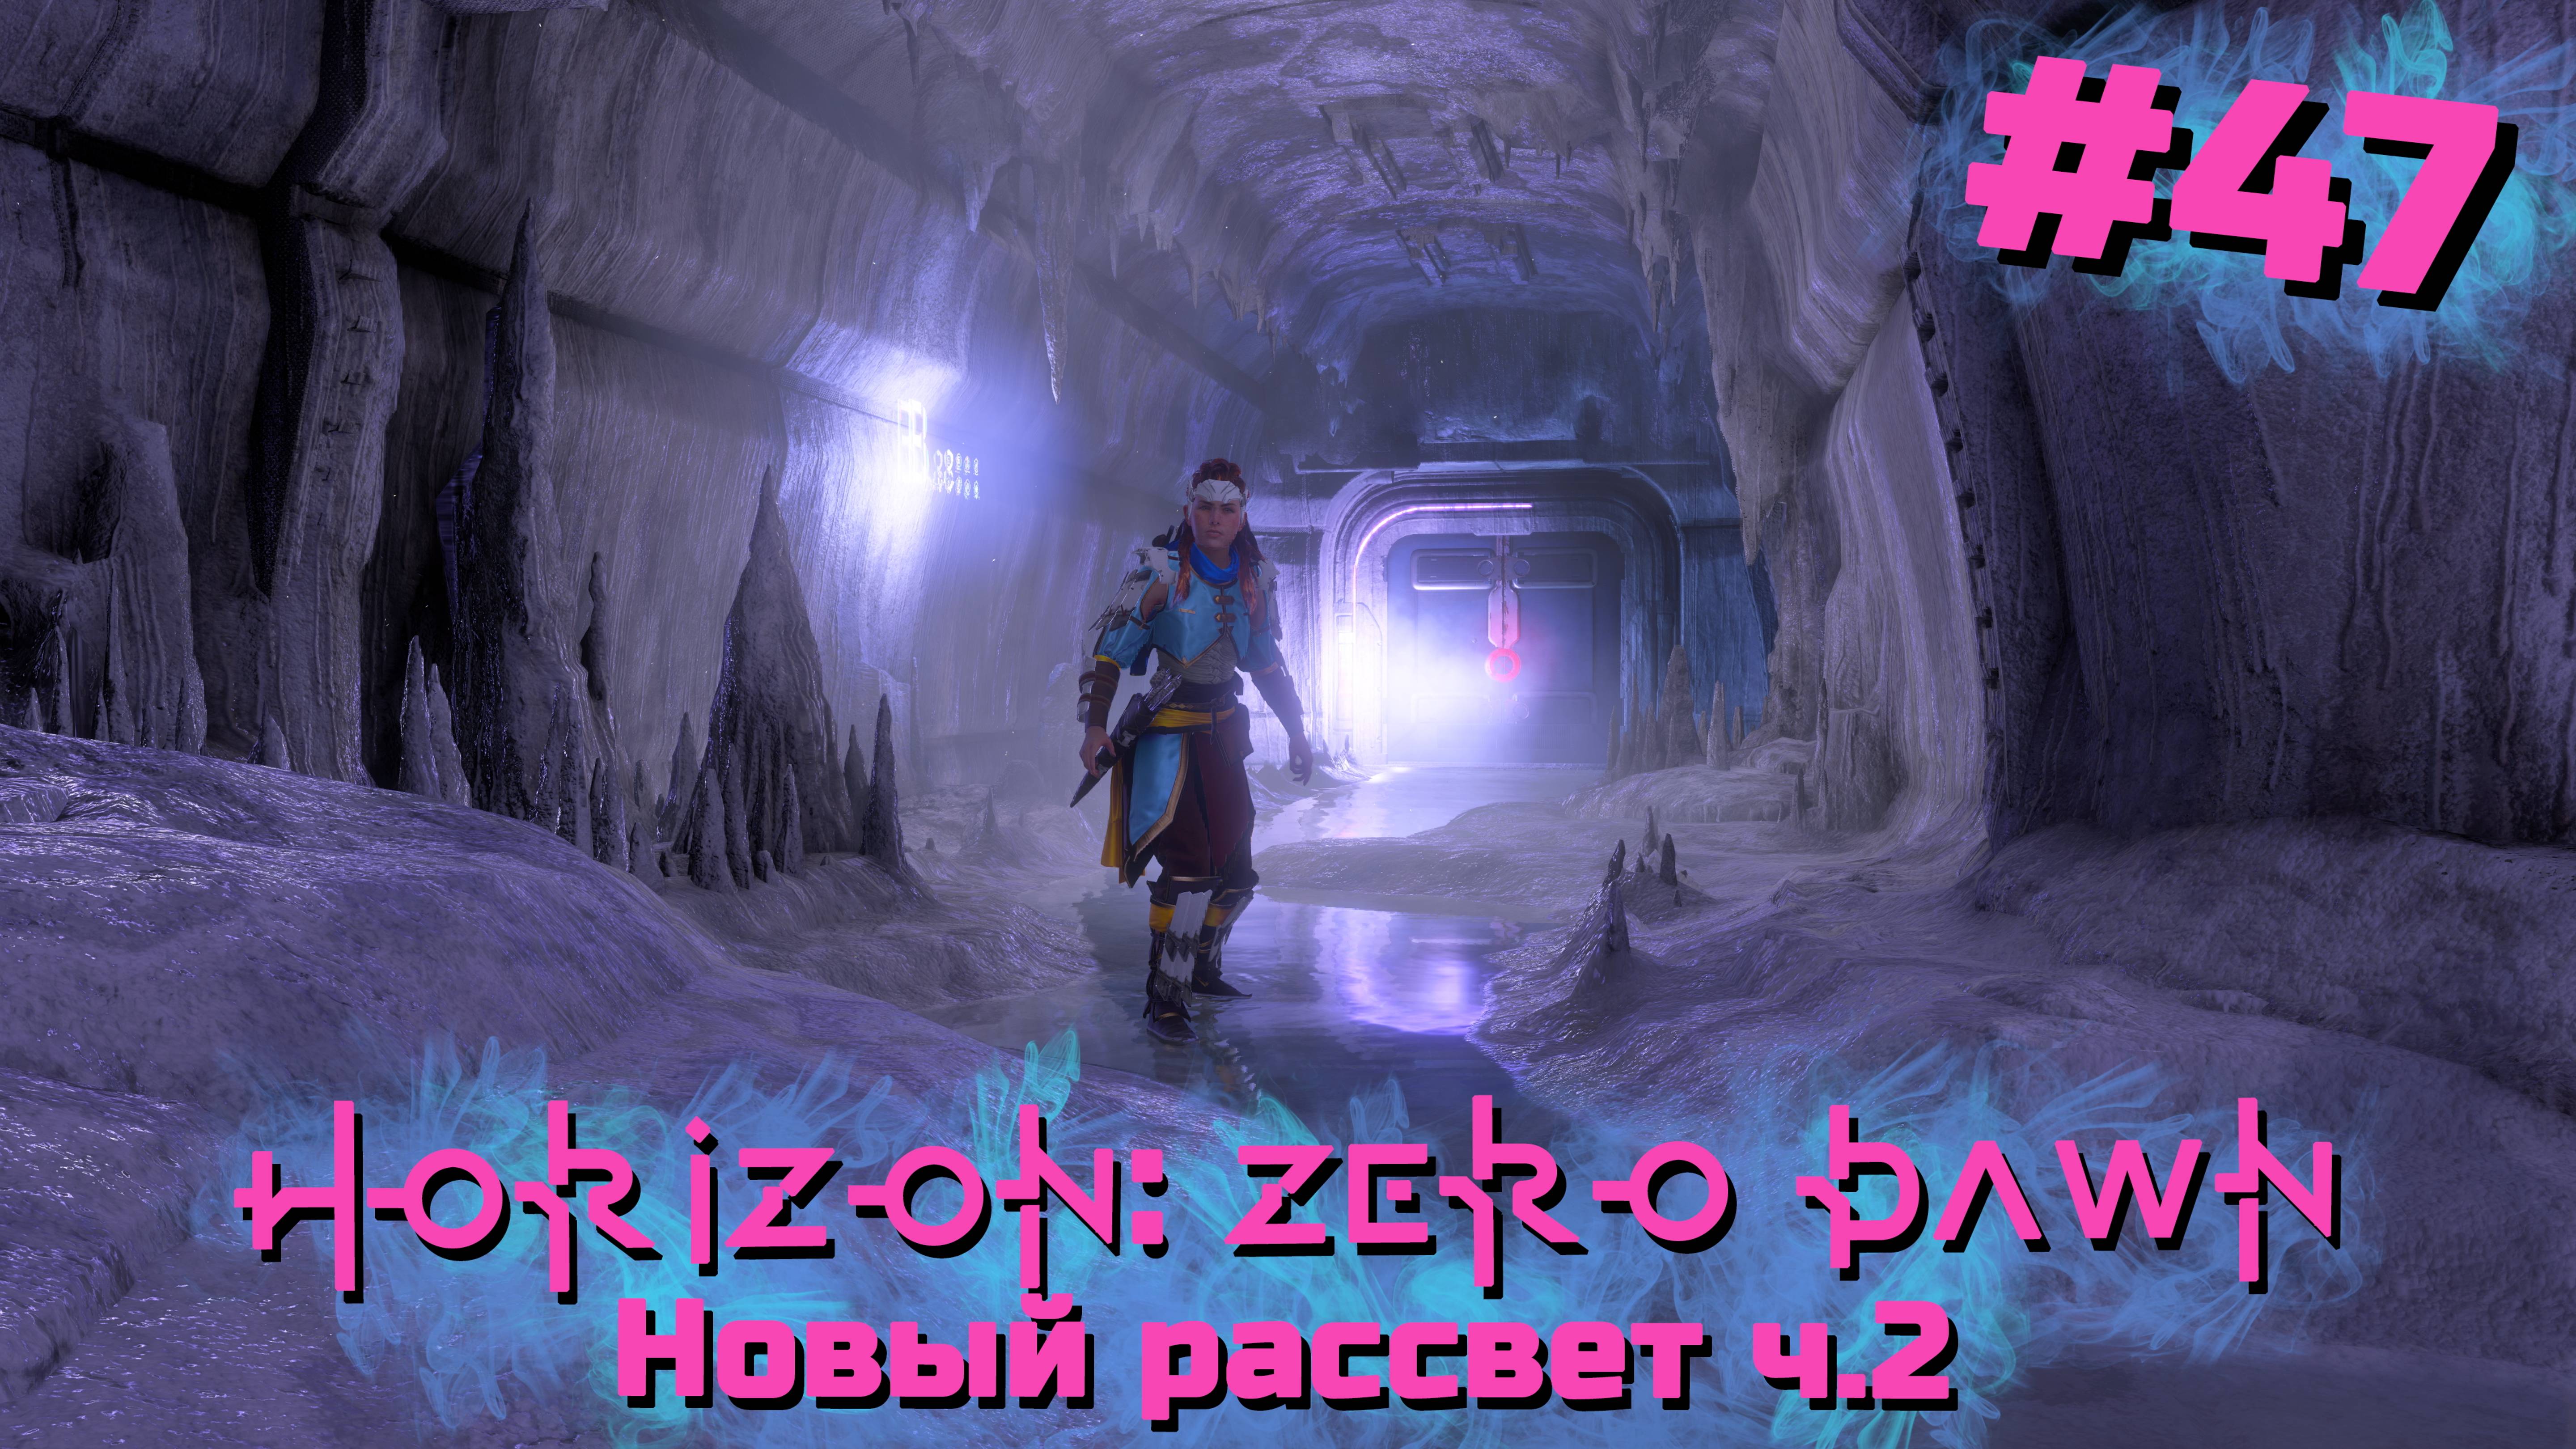 Новый рассвет ч.2 | Horizon: Zero Dawn #047 [Прохождение] | Play GH